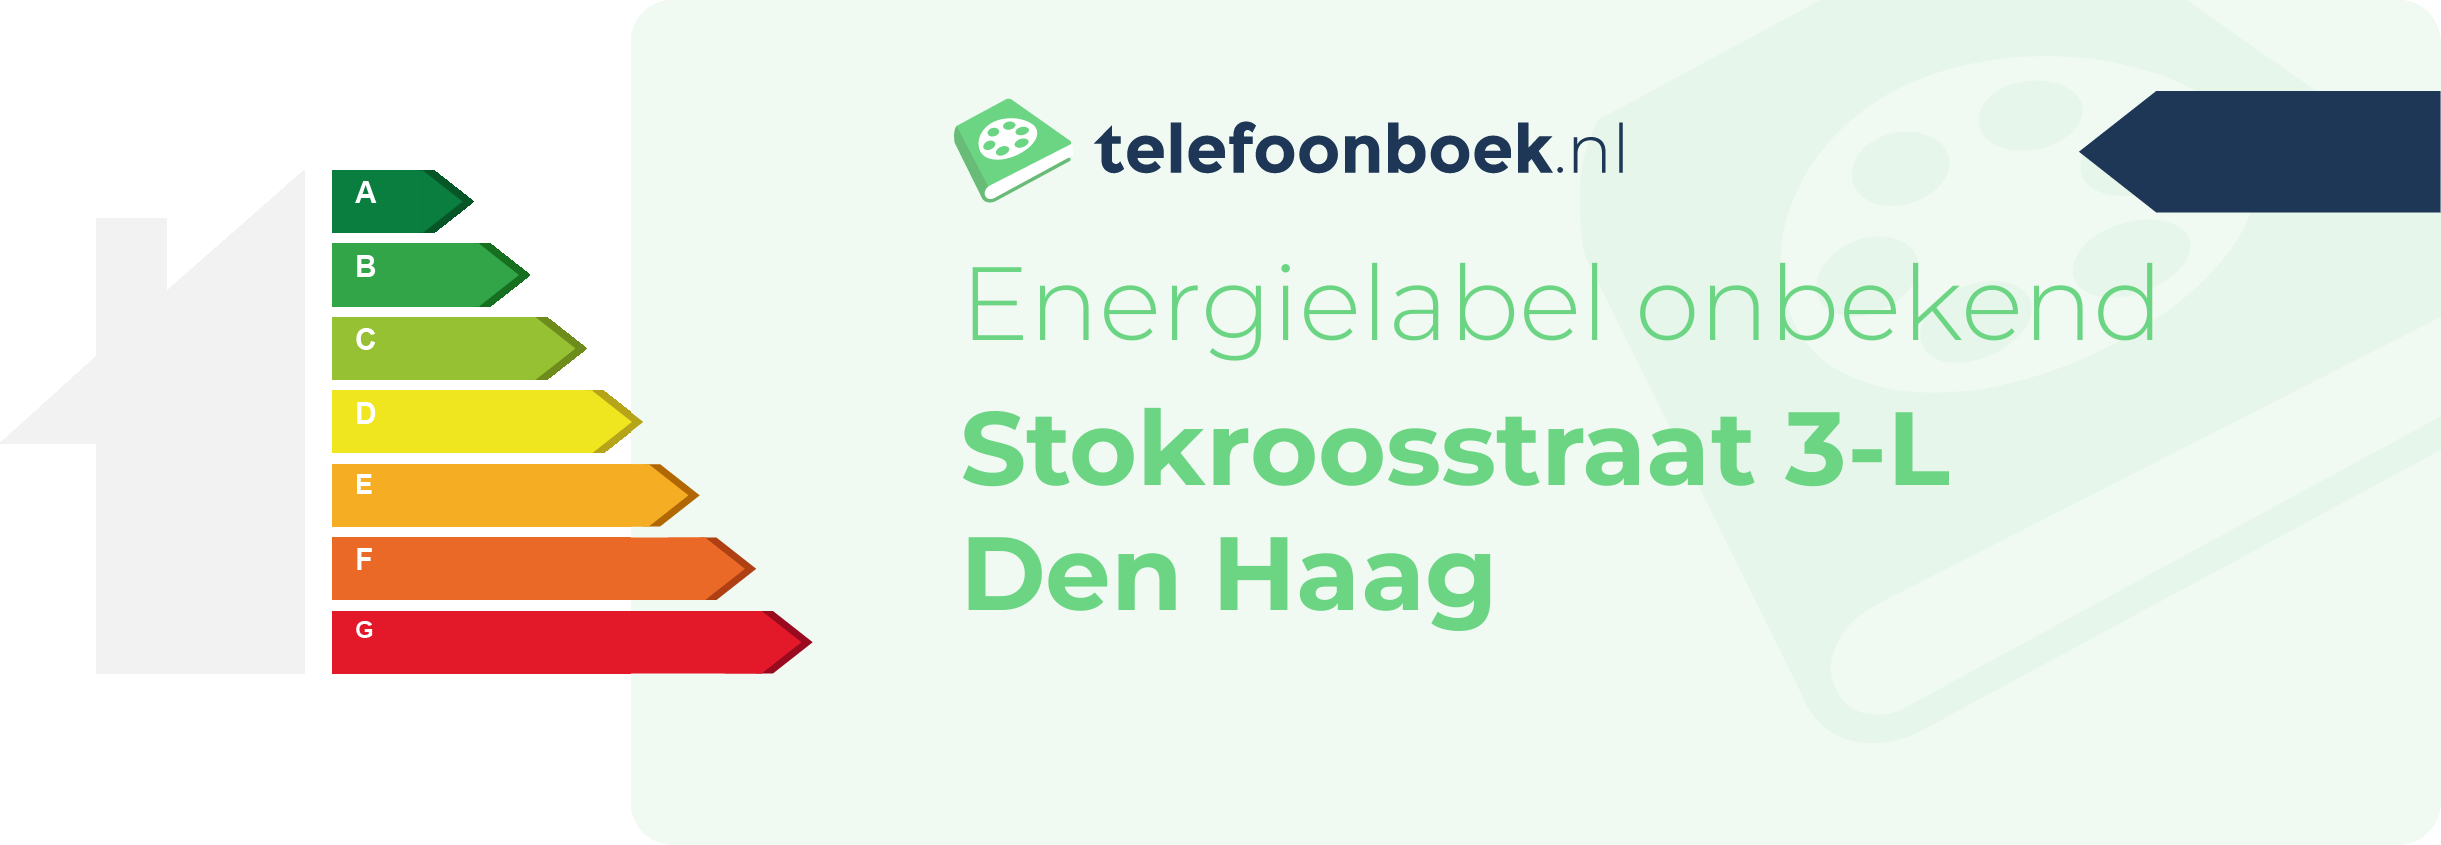 Energielabel Stokroosstraat 3-L Den Haag